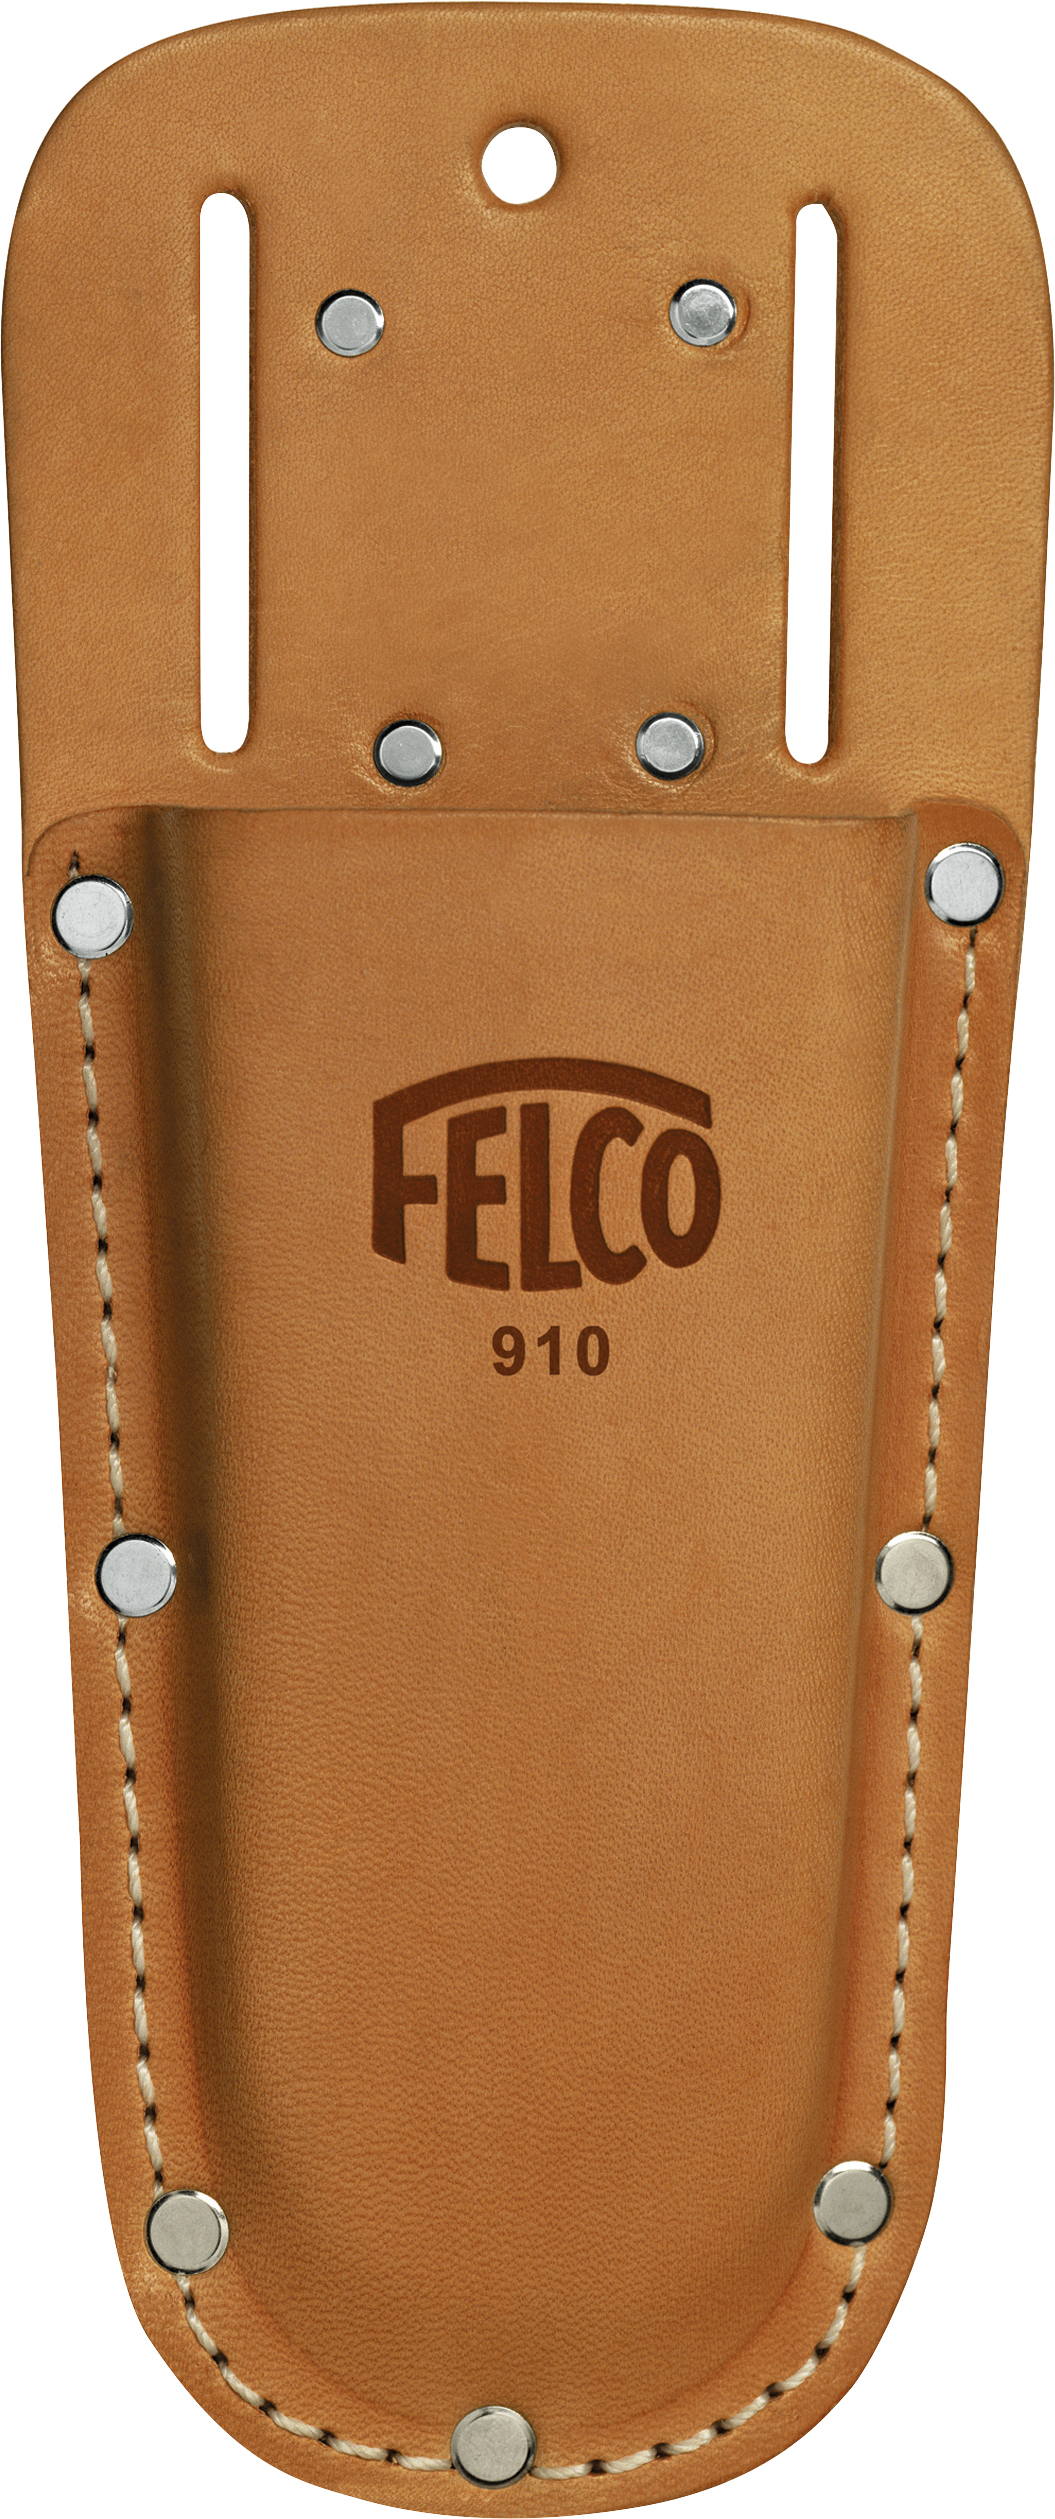 Hölster Felco 910 till sekatörer